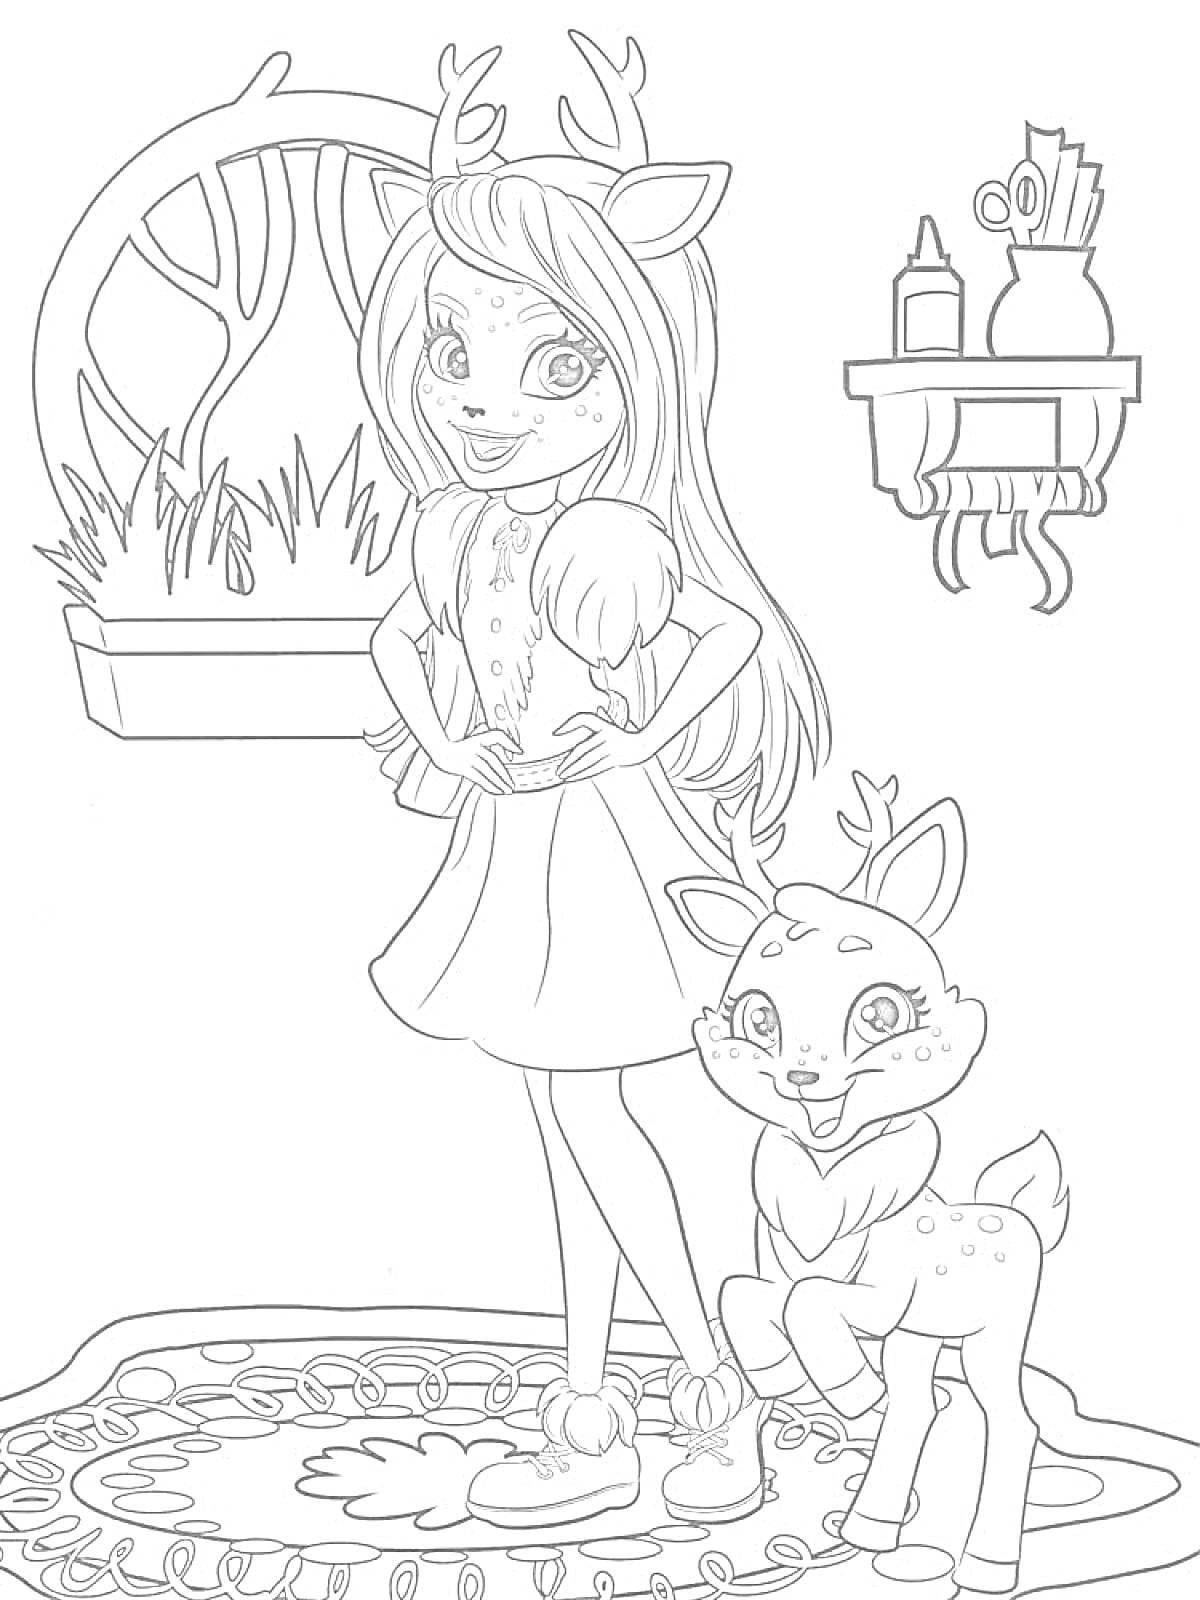 Девочка с оленьими рожками и олешек на ковре у окна с травой и полки с предметами